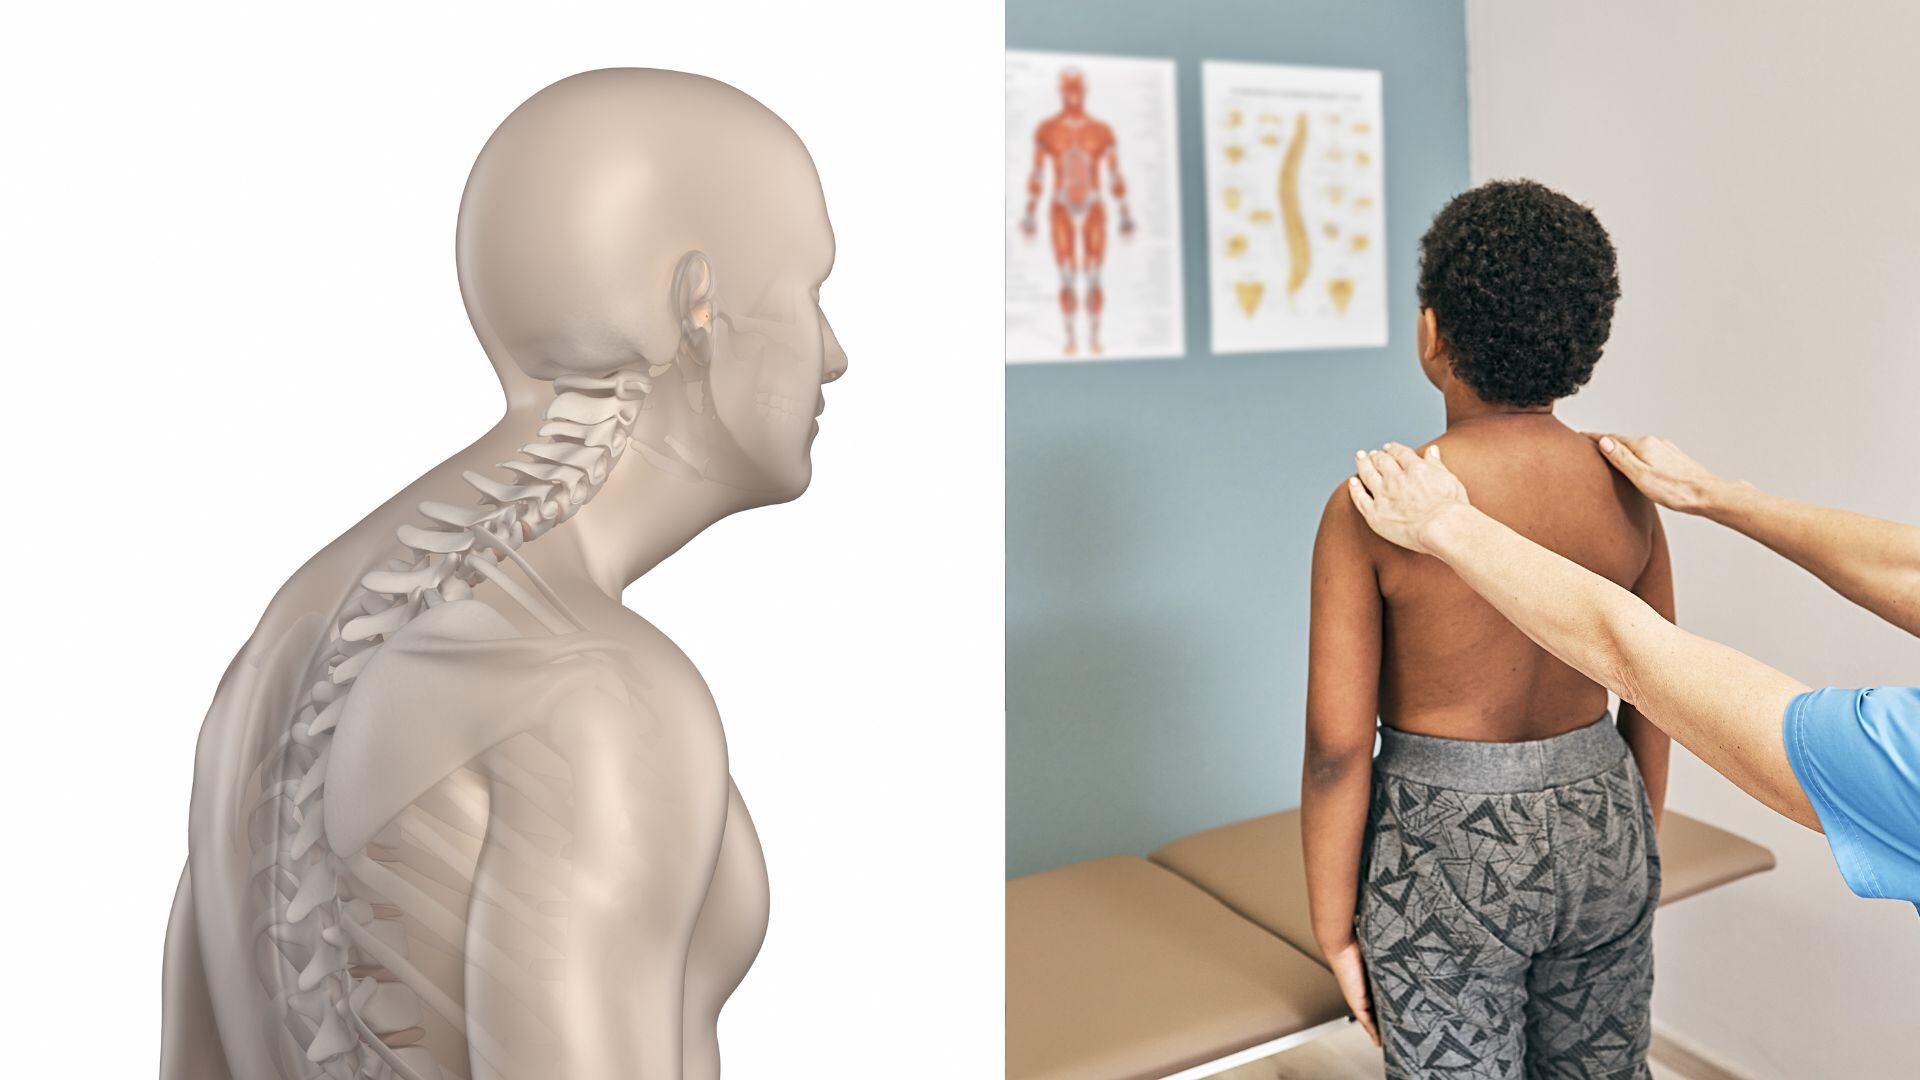 La cifosis se refiere a la curvatura natural que presenta la columna vertebral en su parte superior, conocida como la región torácica.